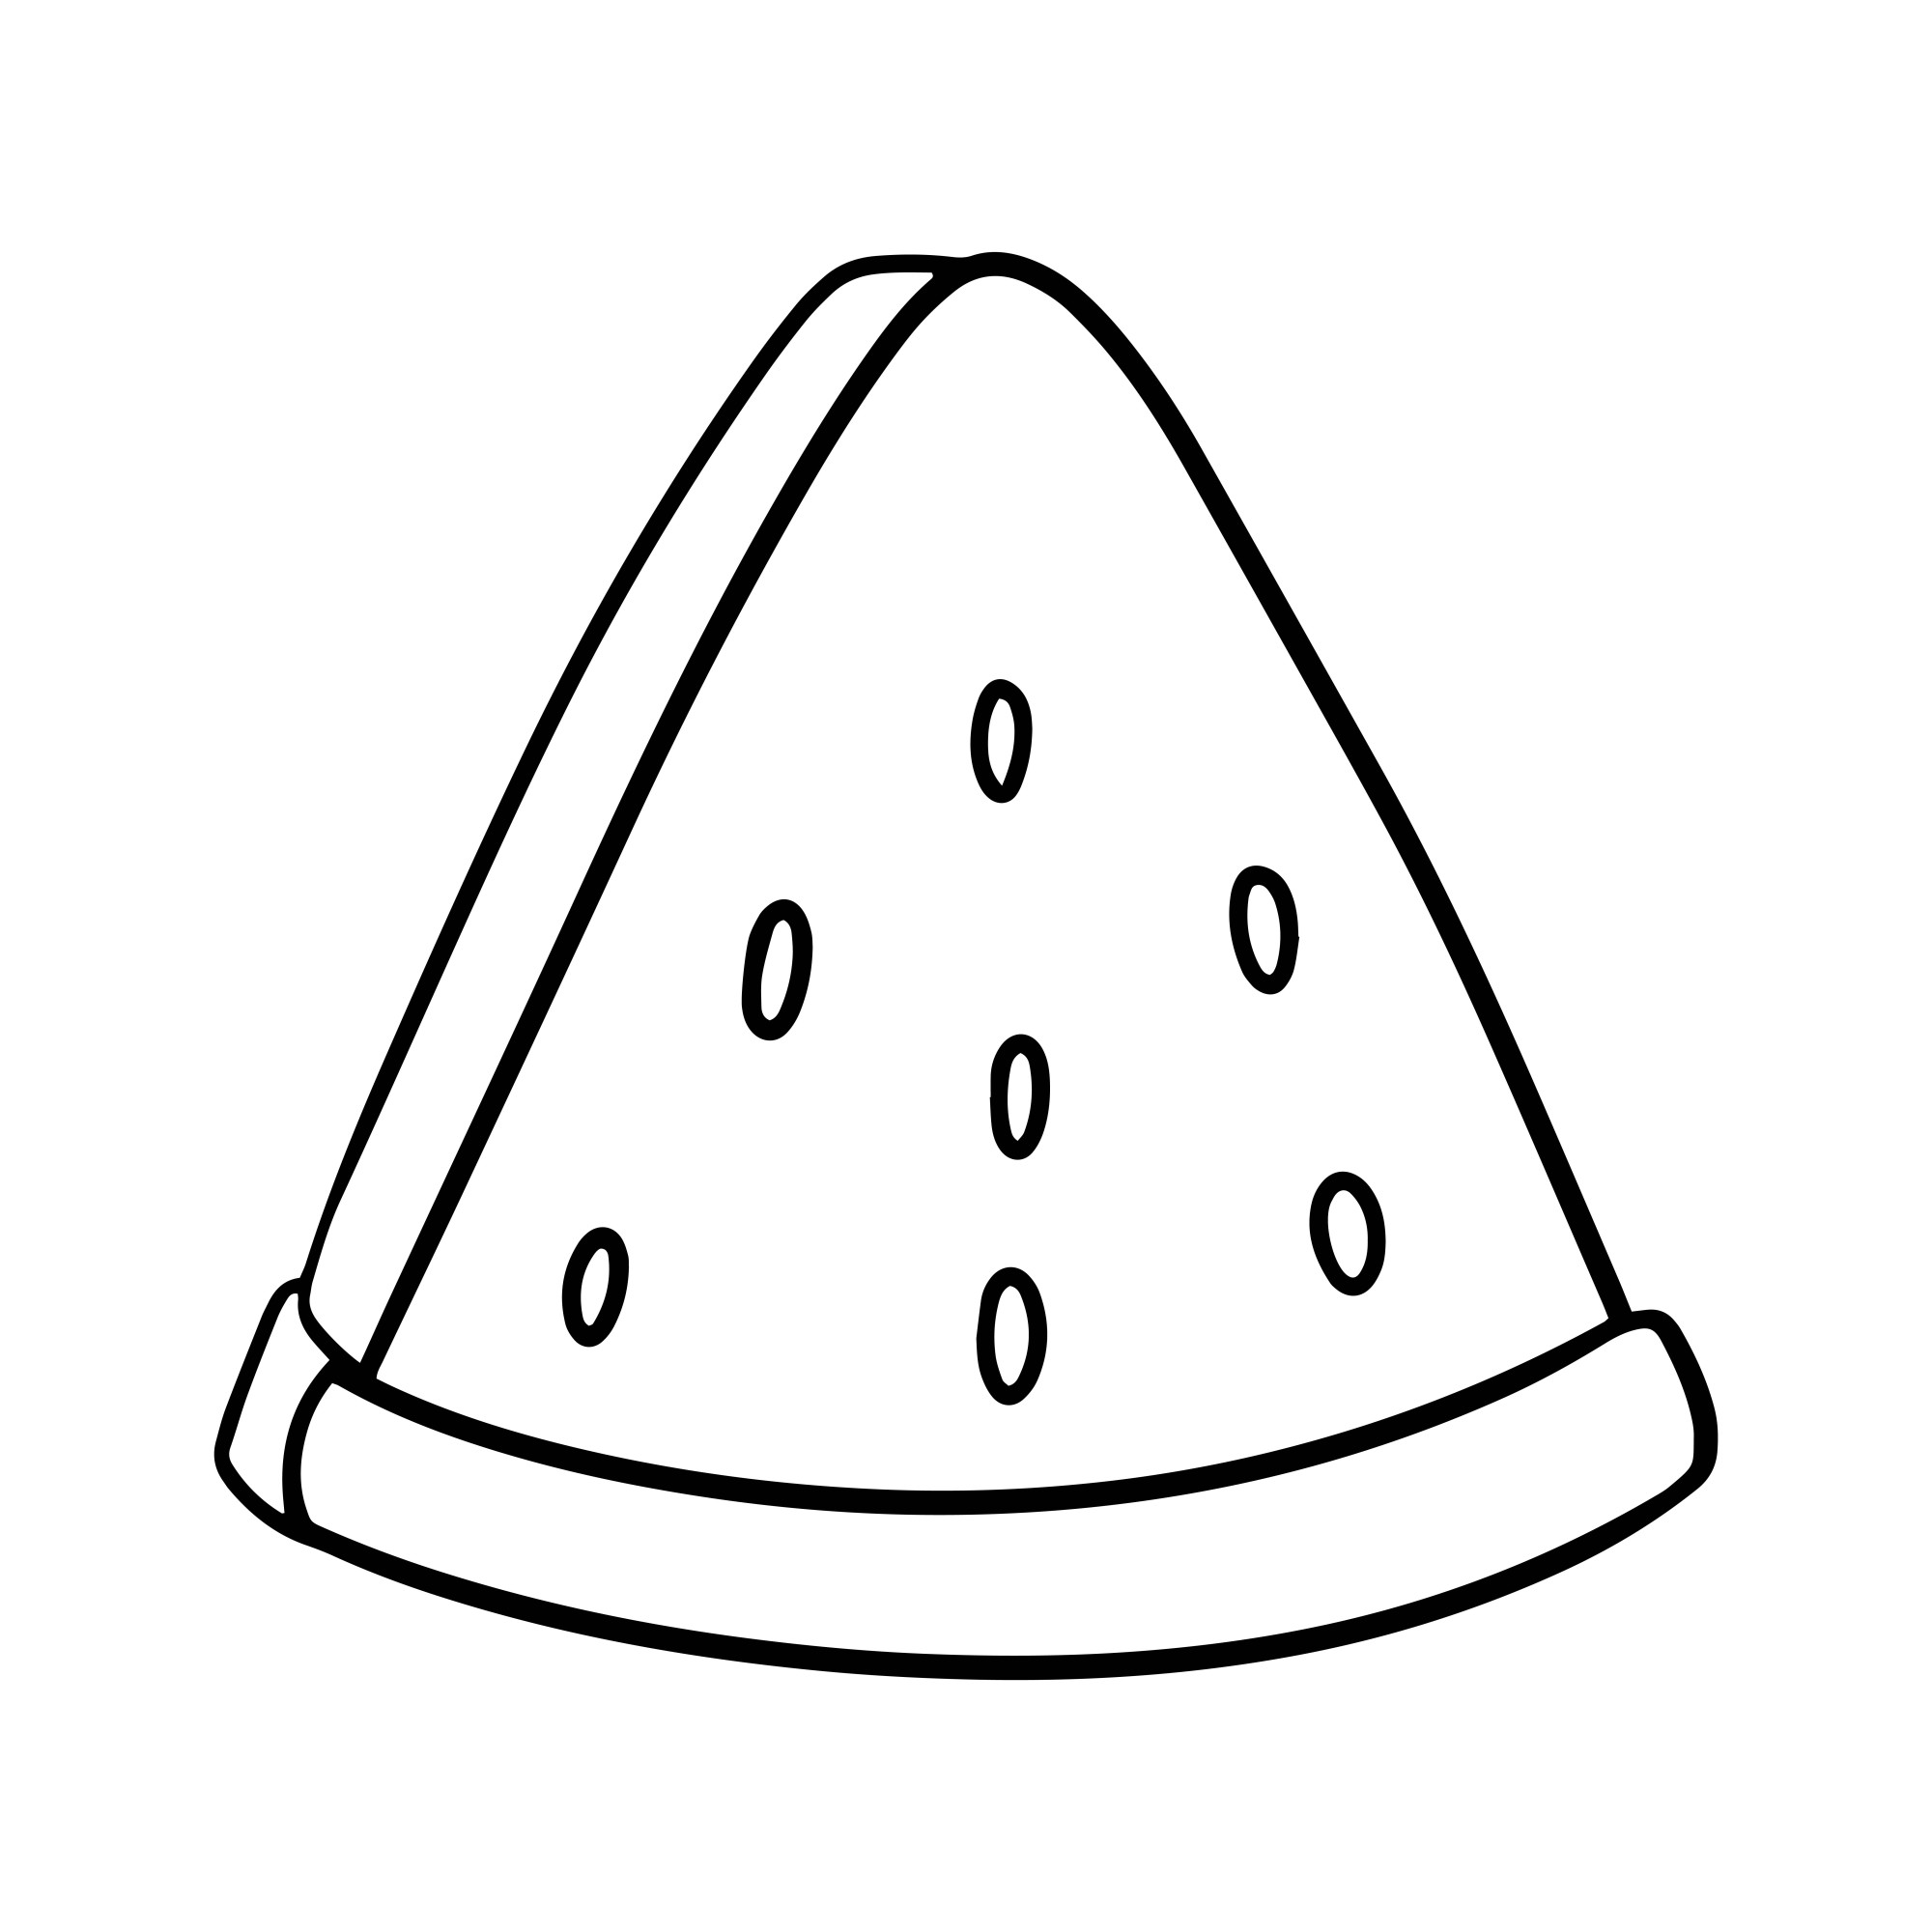 Раскраска для детей: треугольный ломтик красного арбуза